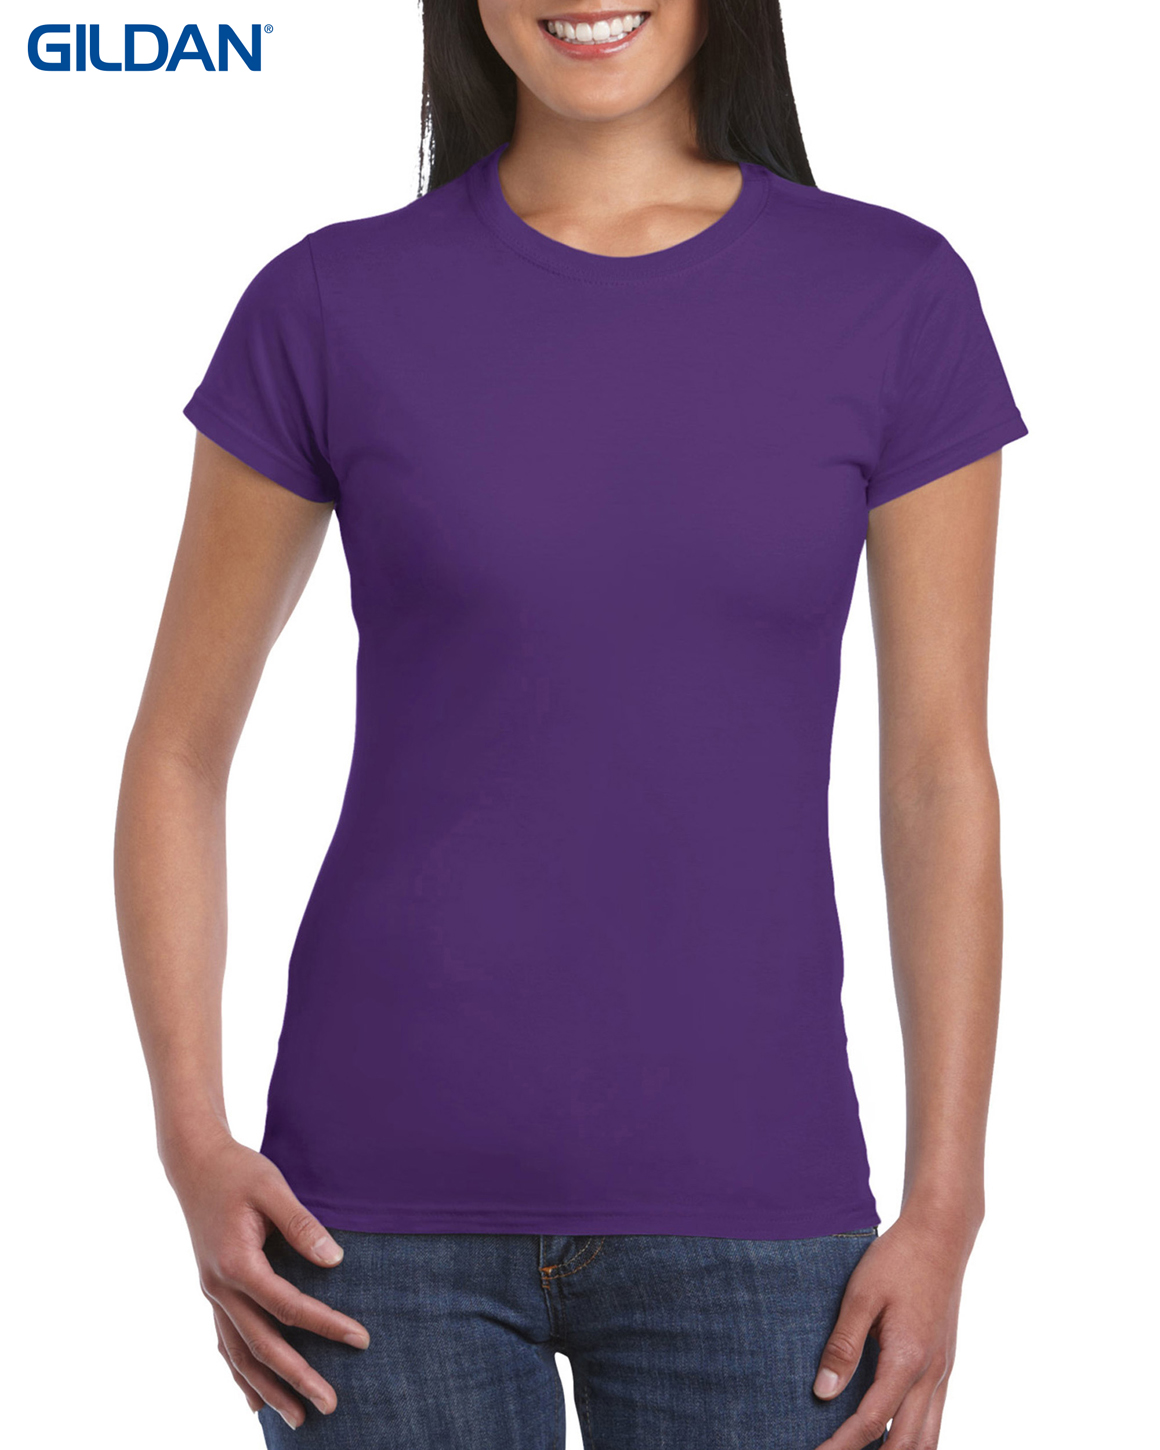 Download T Shirts : GILDAN WOMENS LIGHTWEIGHT 150GM 100% COTTON CN ...